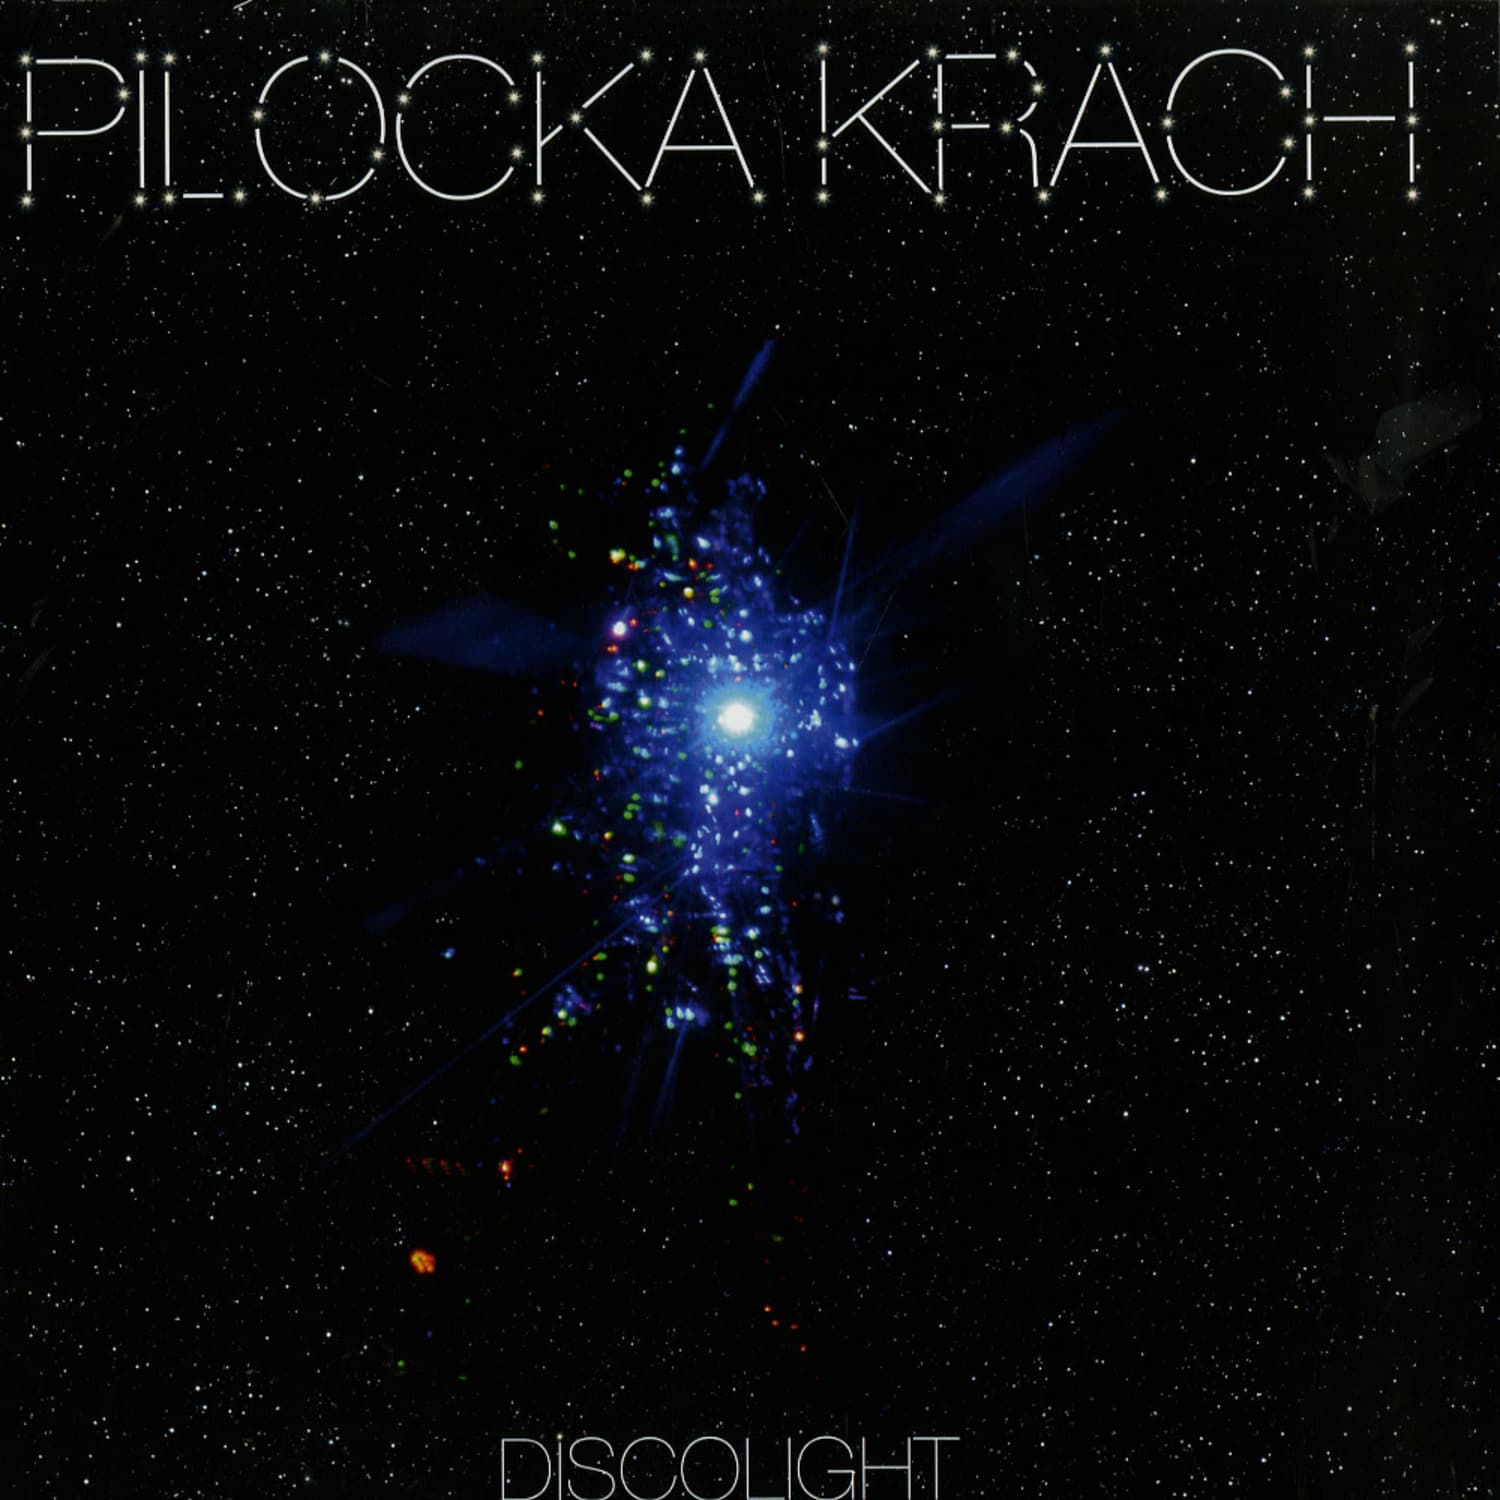 Pilocka Krach - DISCOLIGHT, HRDVISION, ACID PAULI RMXS